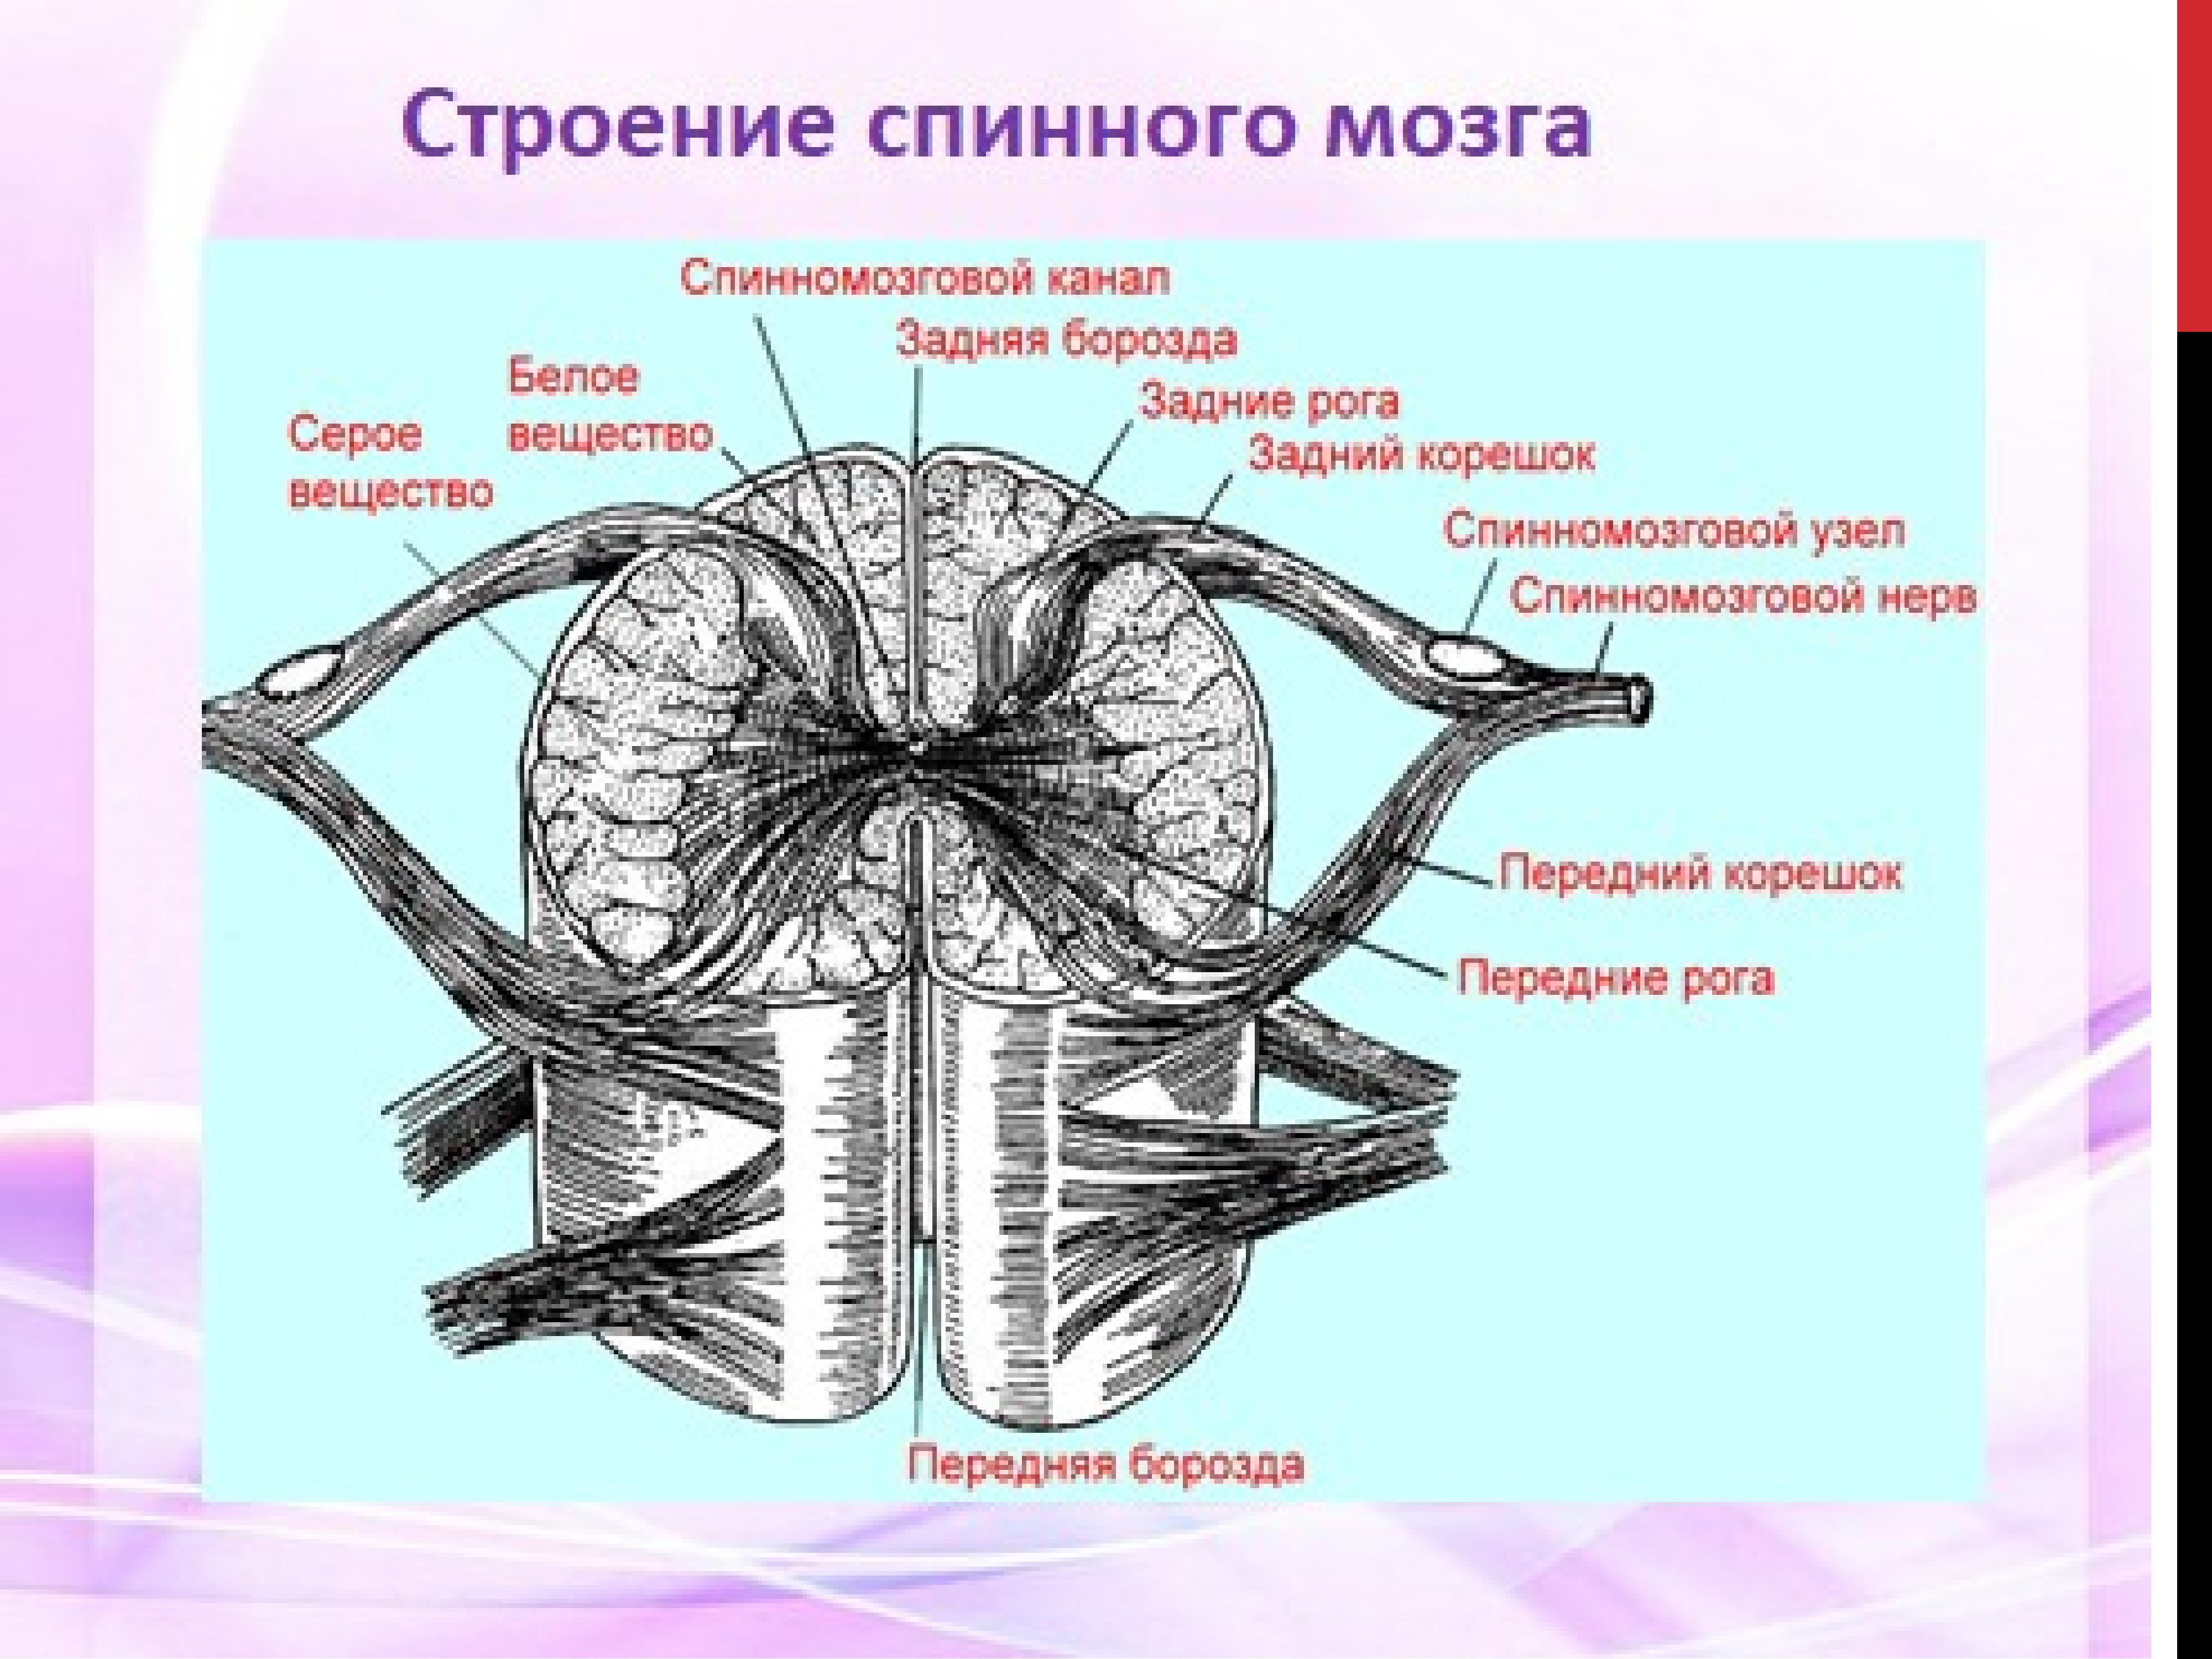 Наружнеее строение спинного мозга. Наружное и внутреннее строение спинного мозга. Структура внутреннего строения спинного мозга. Рис 61 спинной мозг.